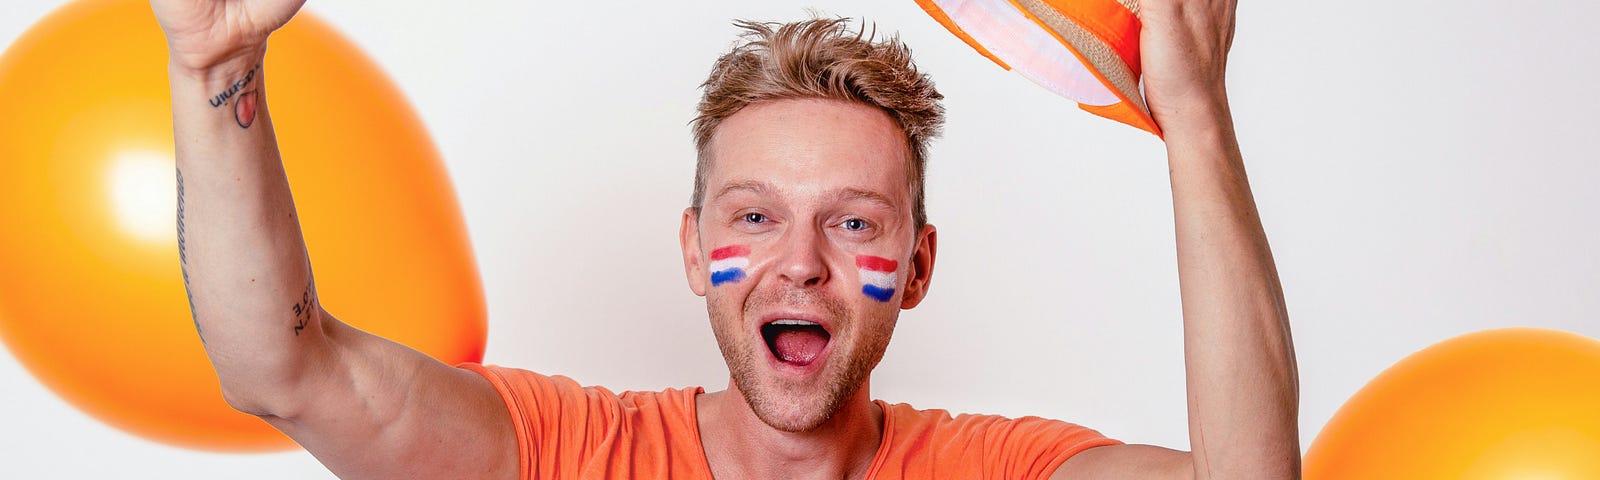 A Dutch fan dressed in orange